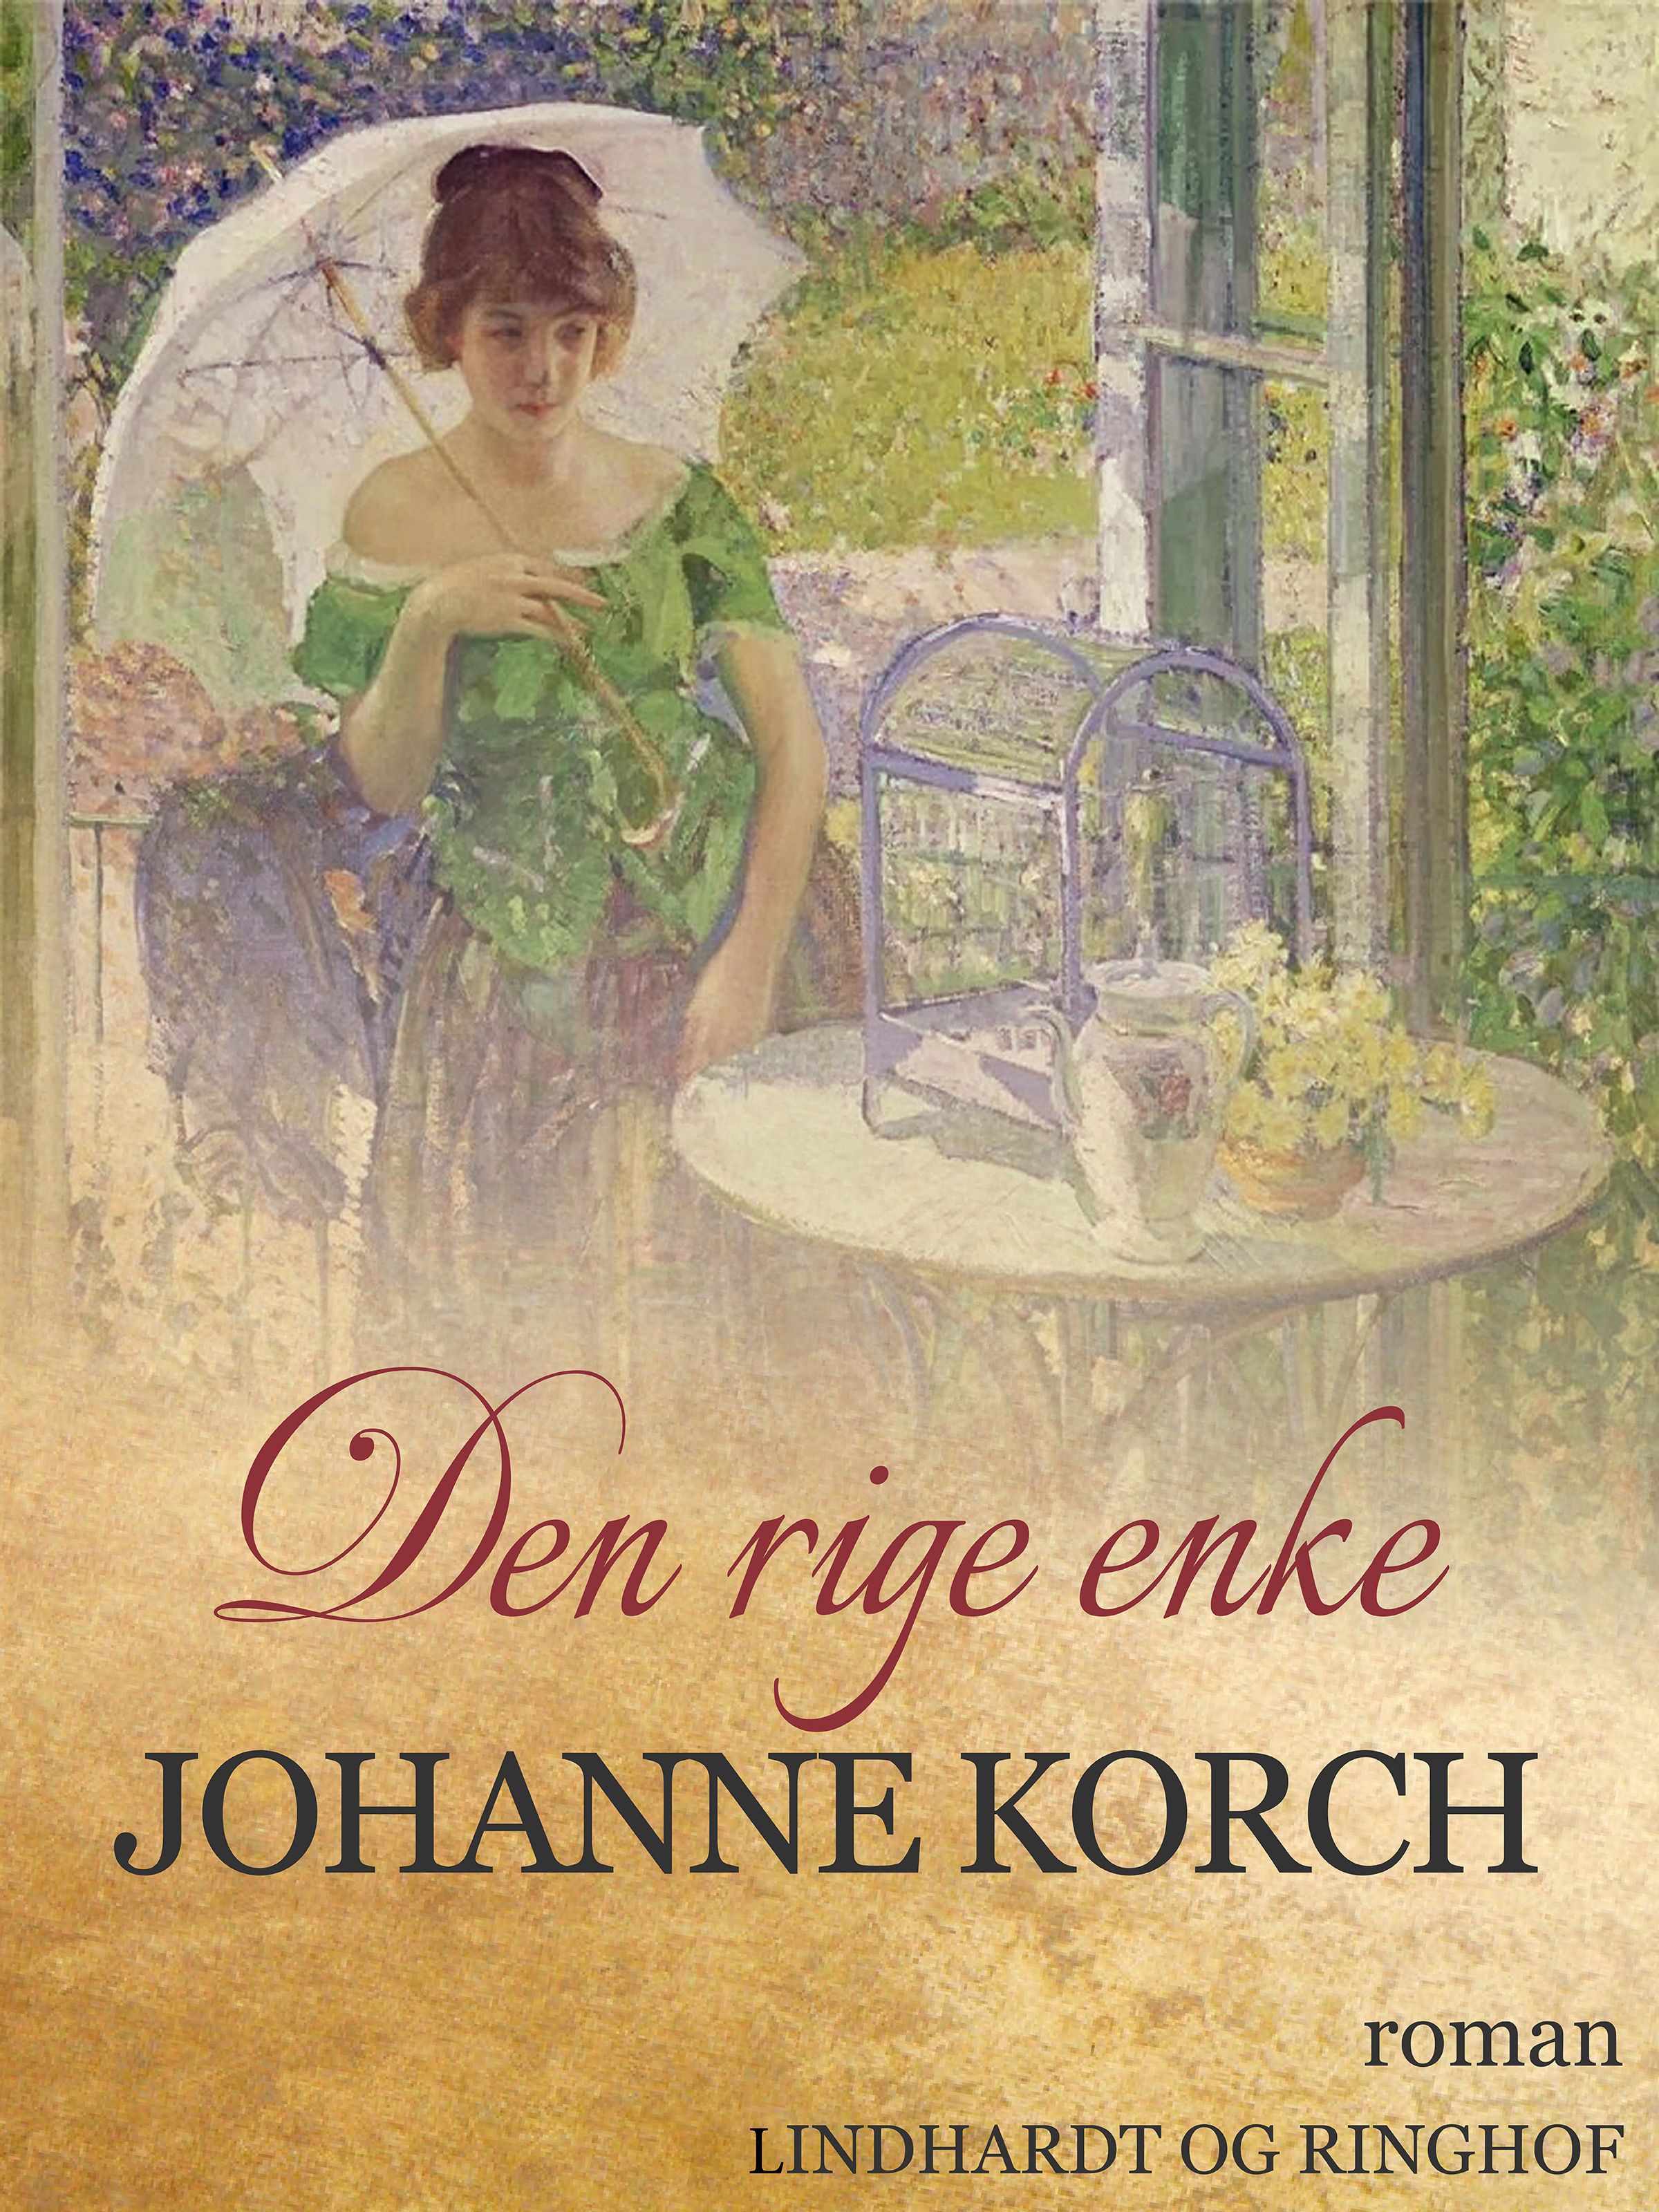 Den rige enke, lydbog af Johanne Korch